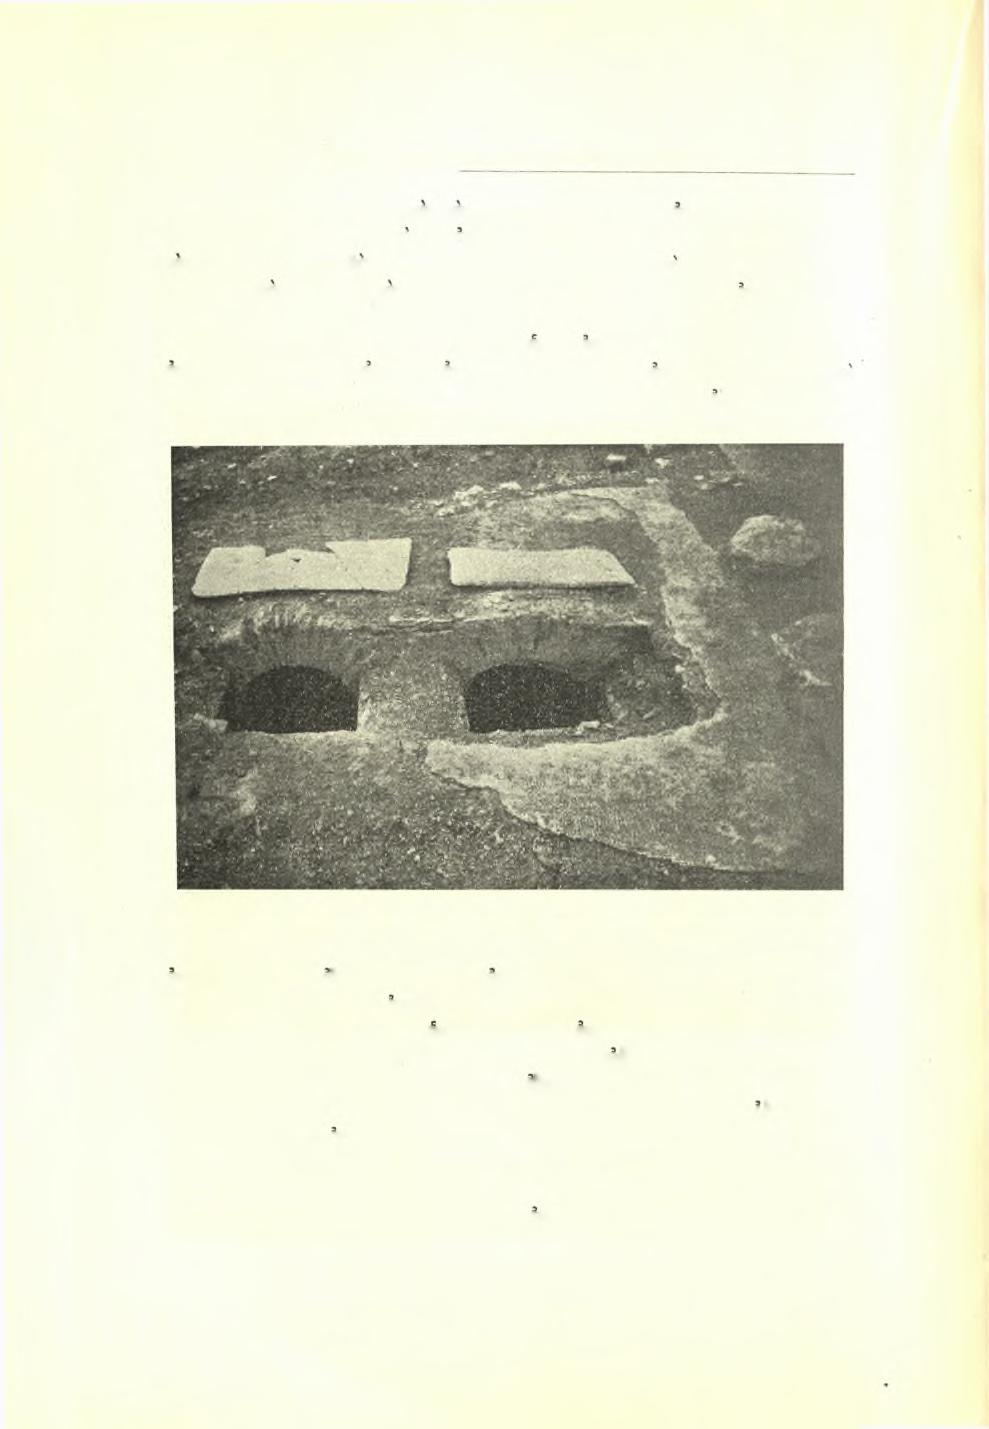 00 Πρακτικά τής Αρχαιολογικής 'Εταιρείας 1936 ό δεξιός θάλαμος, δμοιος προς τον πέρυσι Ιρευνηθέντα αριστερά τής άψΐδος μετά καμαρωτού τάφου και τής επιγραφής τού πρεσβυτέρου Ησυχίου.